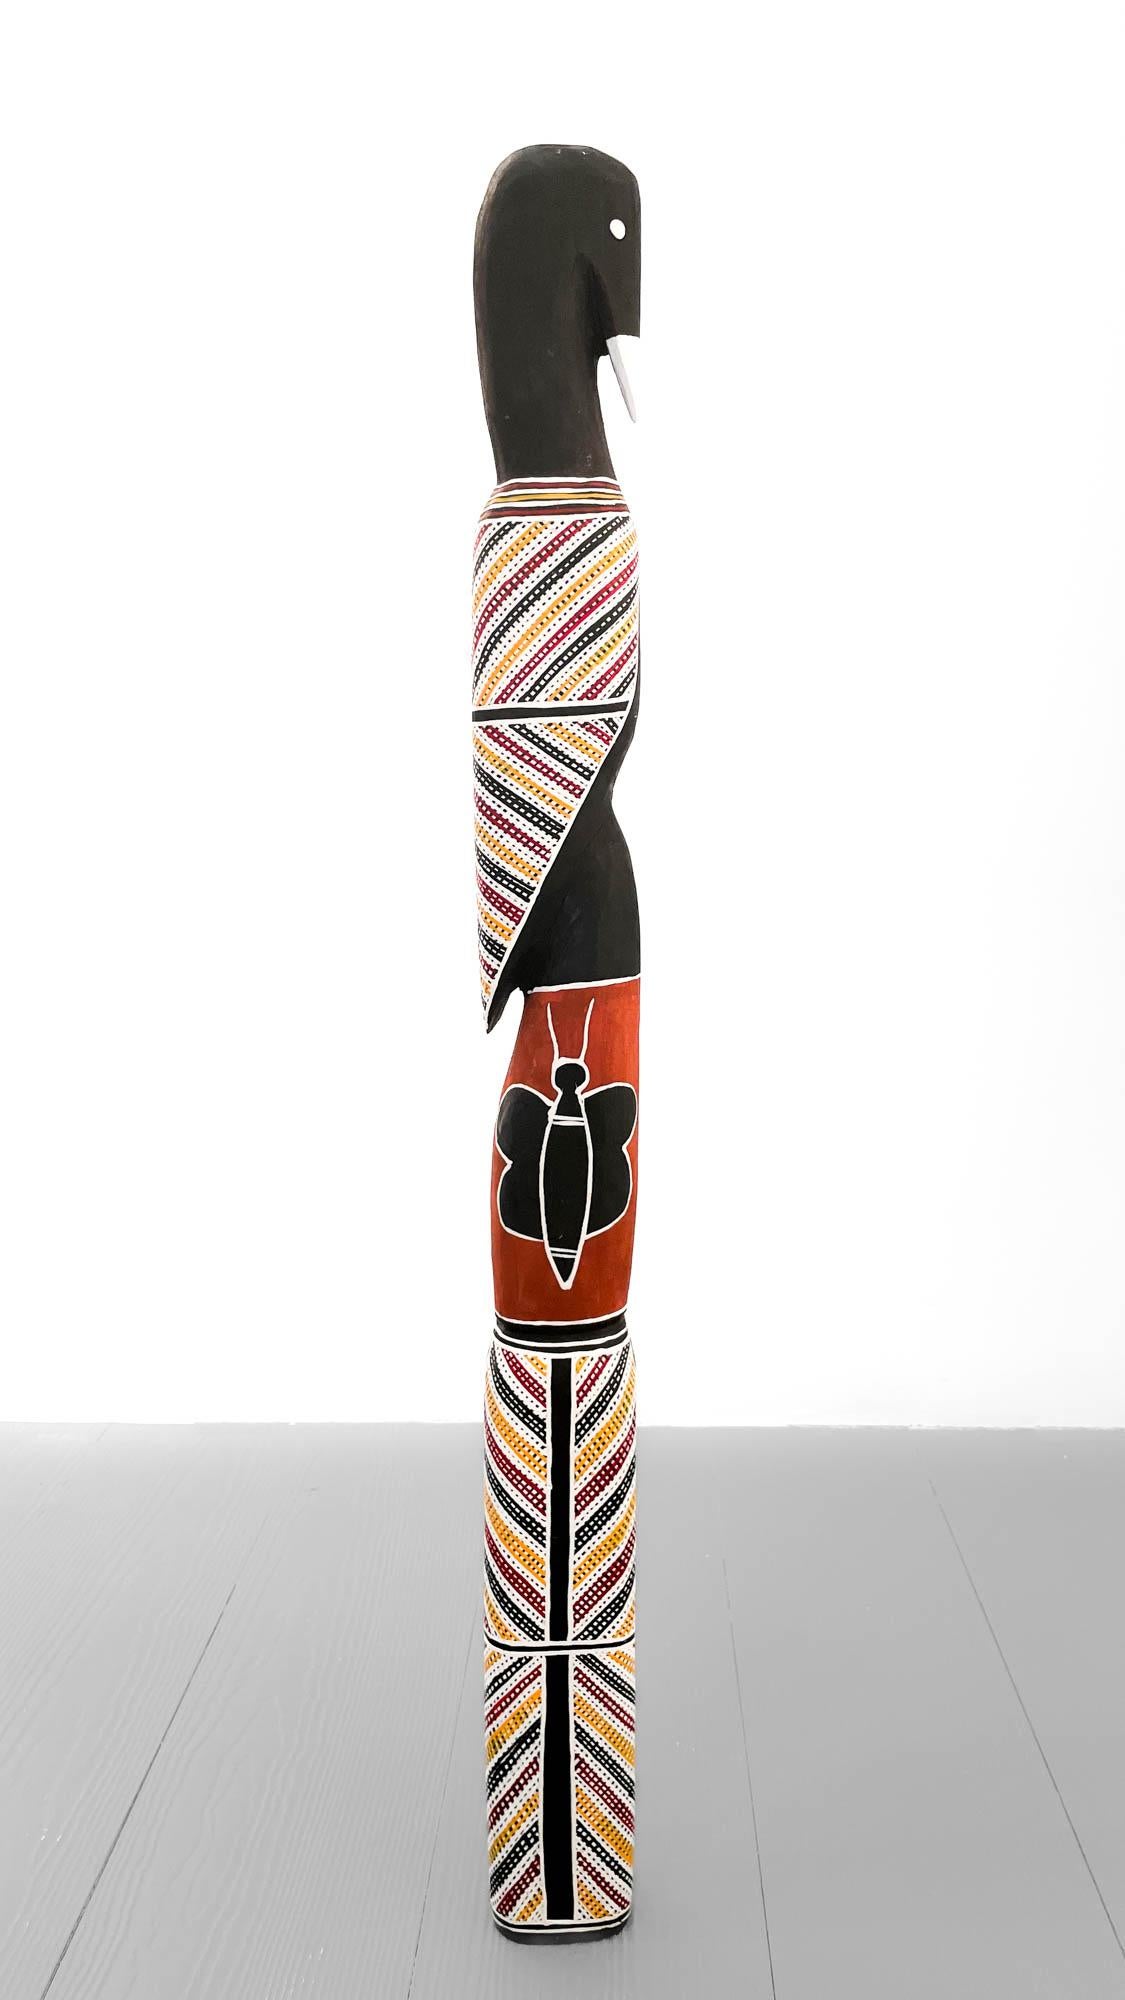 Luke Djalagarrarra  Abstract Sculpture - "Bird with Butterfly Design" Aboriginal Wood Sculpture by Luke Djalagarrarra